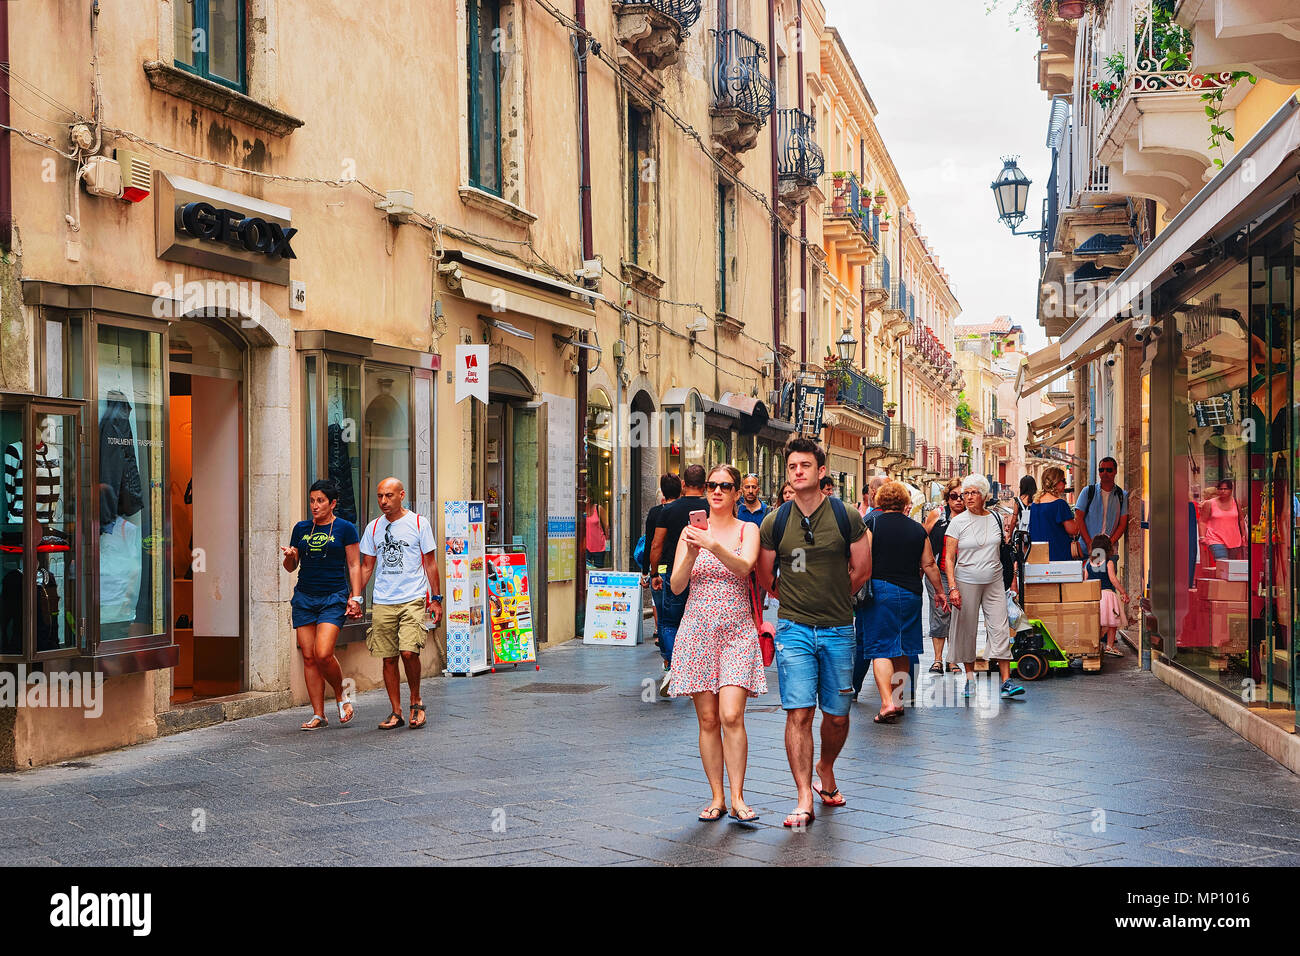 Taormina, Italy - September 25, 2017: Tourists at Corso Umberto street in Taormina, Sicily, Italy Stock Photo